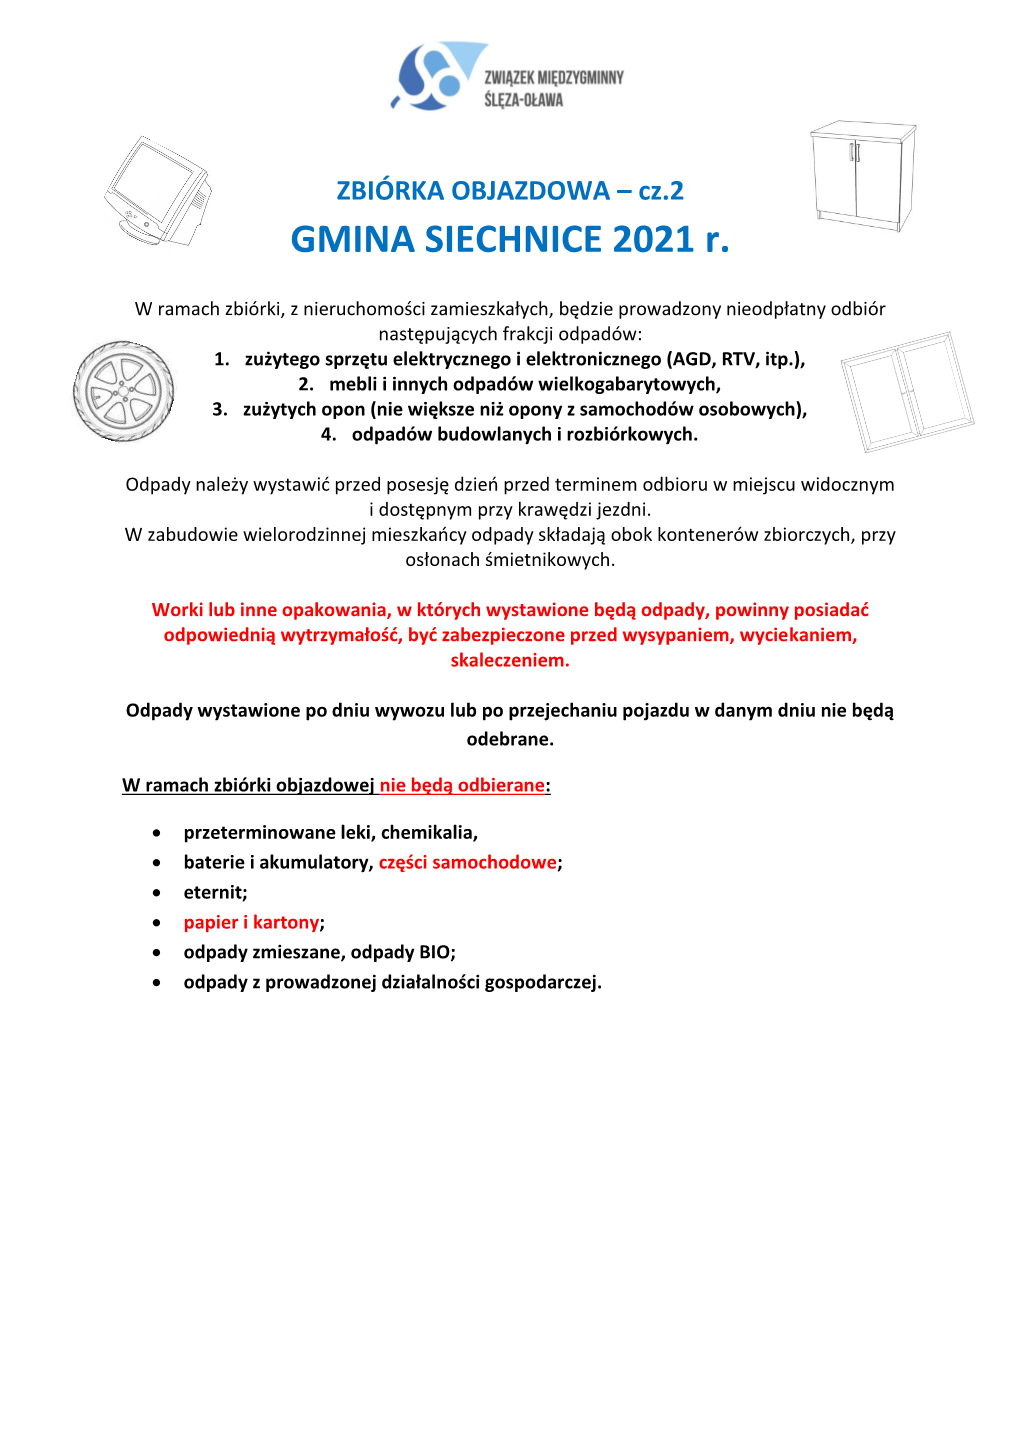 Cz.2 GMINA SIECHNICE 2021 R